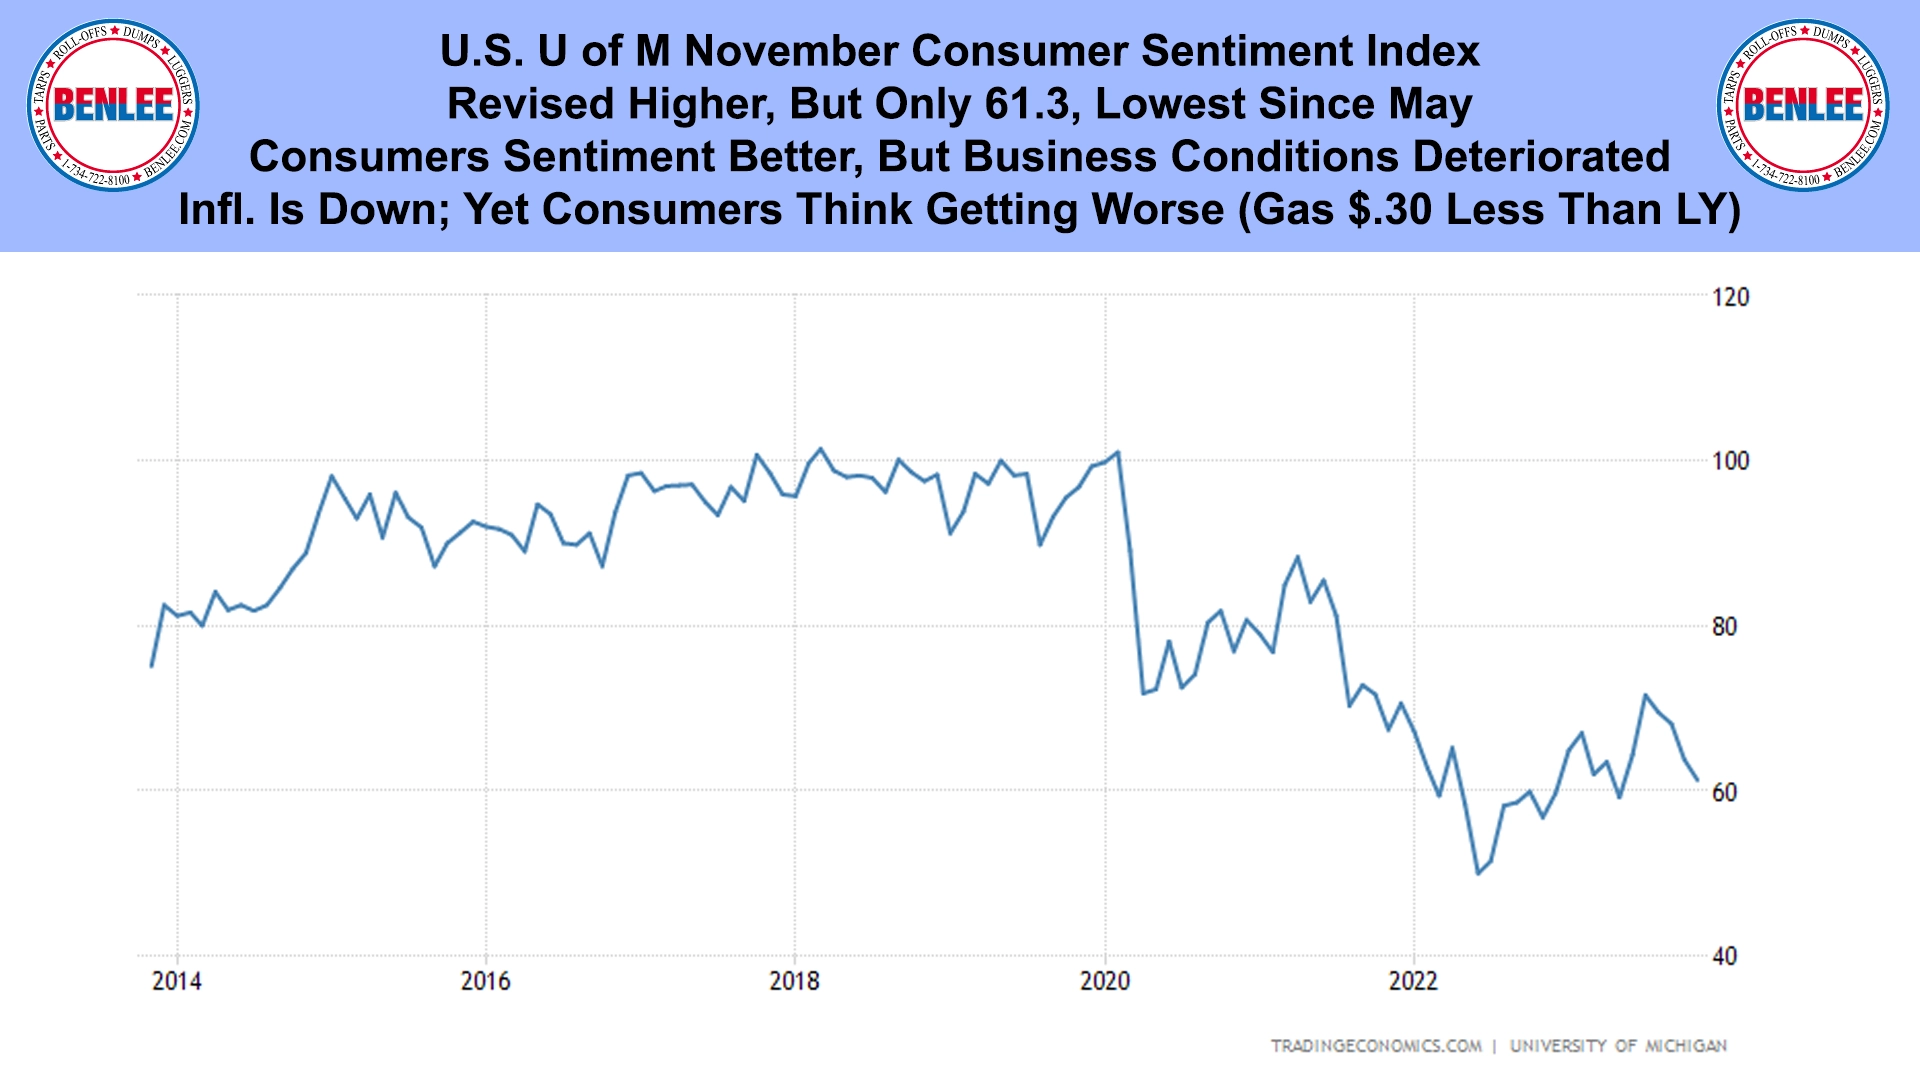 U.S. U of M November Consumer Sentiment Index